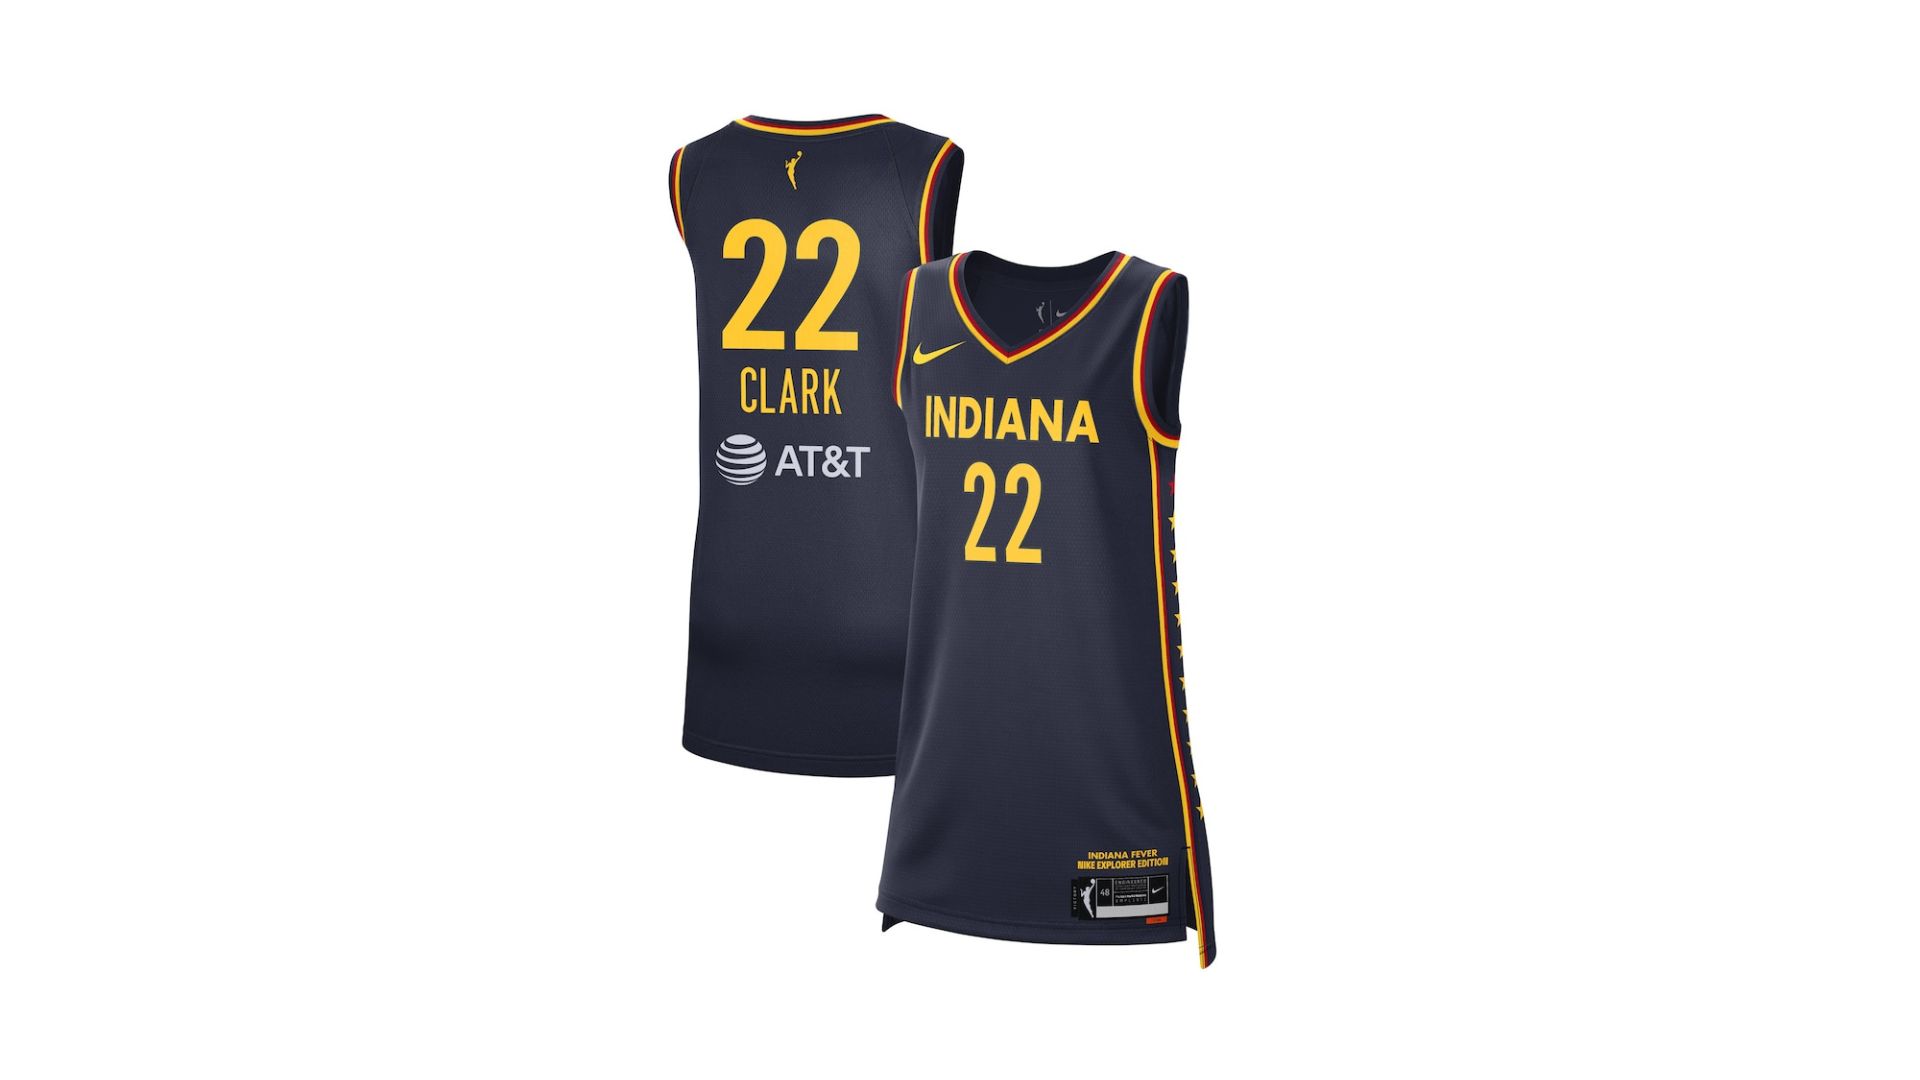 Comprar camiseta Caitlin Clark WNBA Indiana Fever: precios, disponibilidad